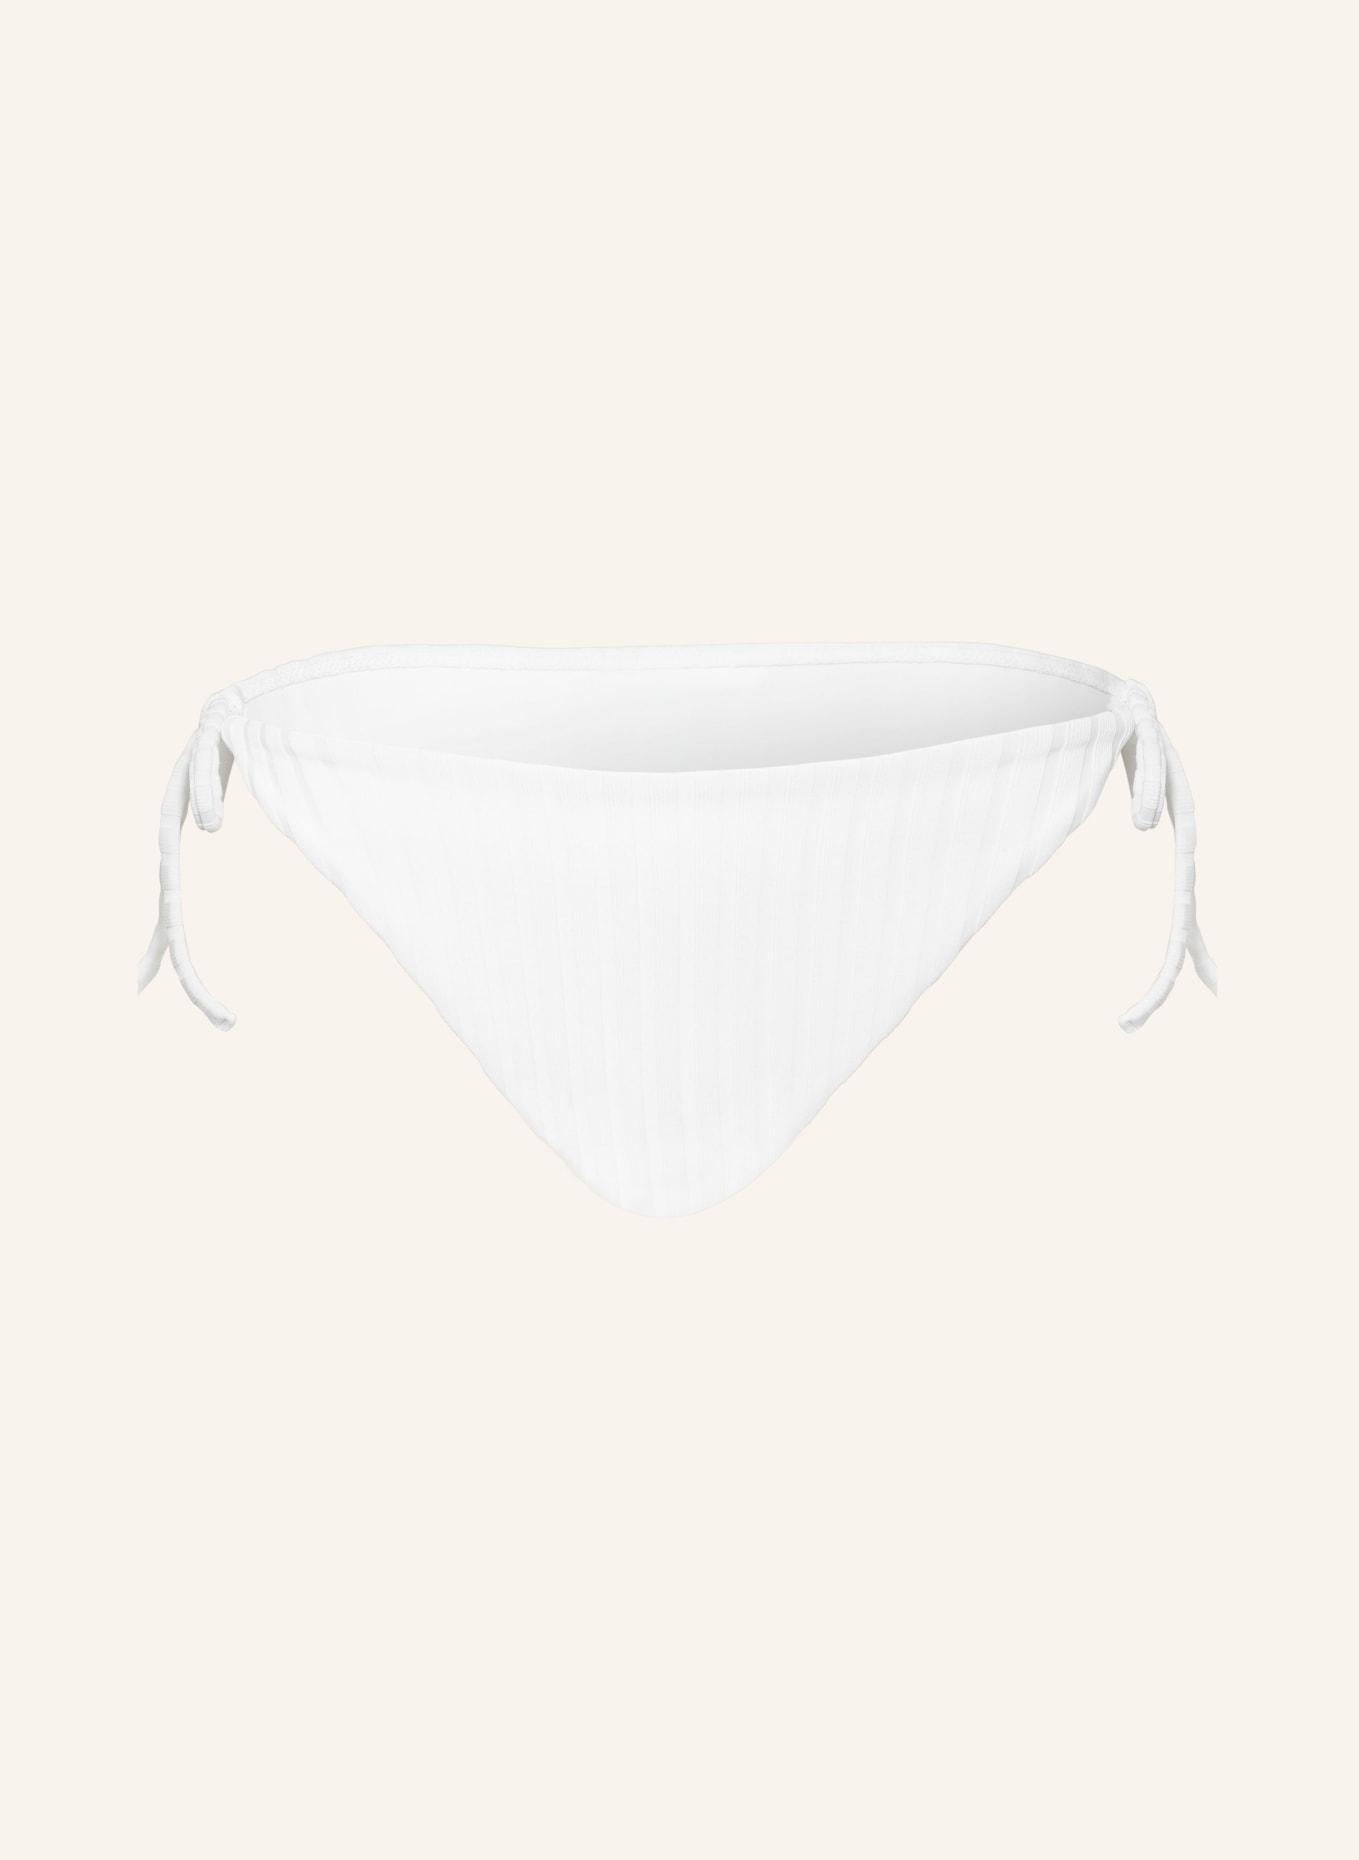 Calvin Klein Triangle bikini bottoms ARCHIVE RIB, Color: WHITE (Image 1)